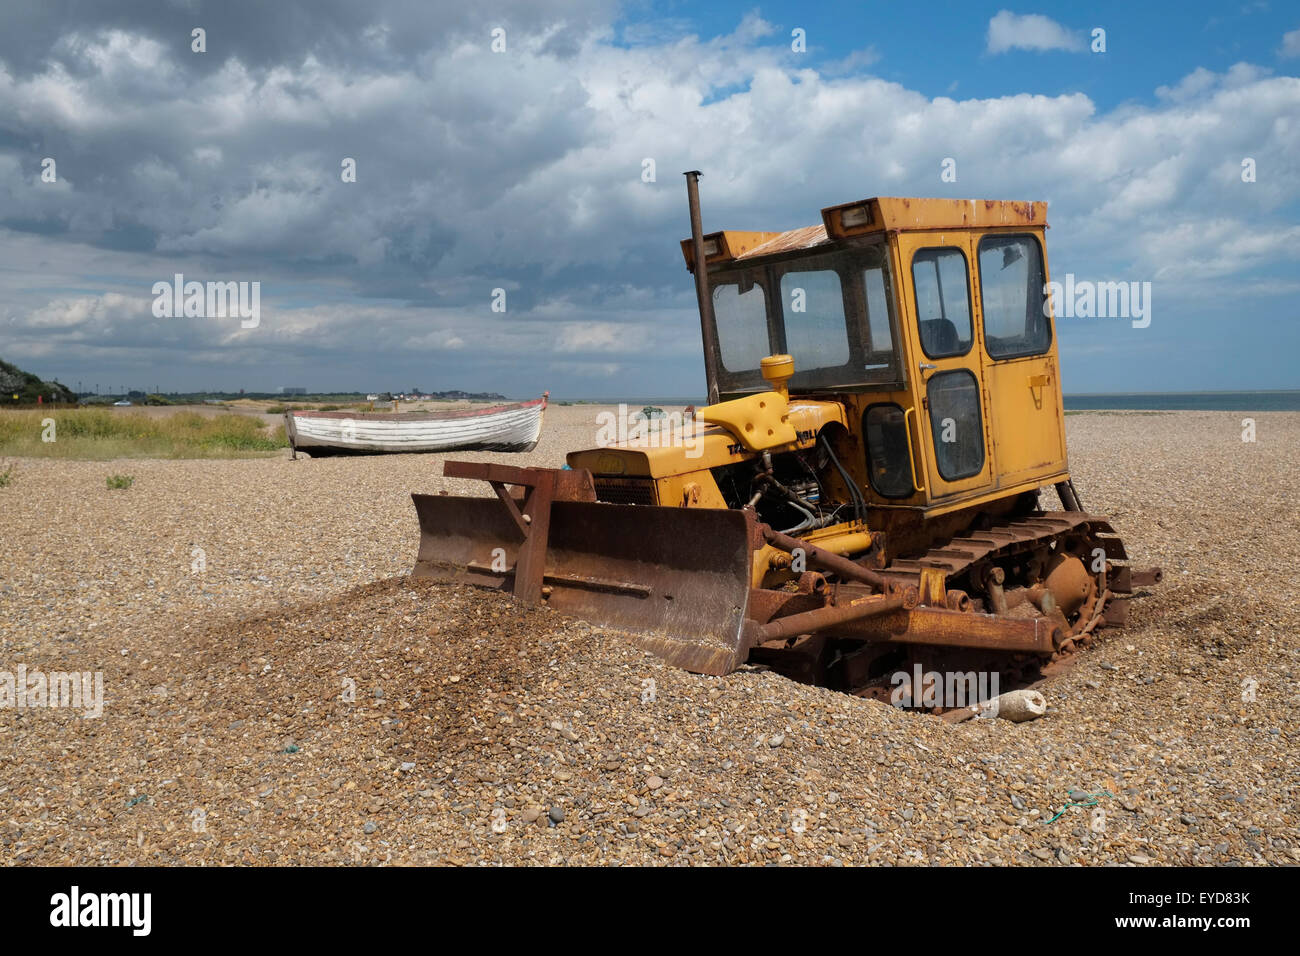 Un bulldozer caterpillar sur la plage à Aldeburgh, dans le Suffolk, en Angleterre. Banque D'Images